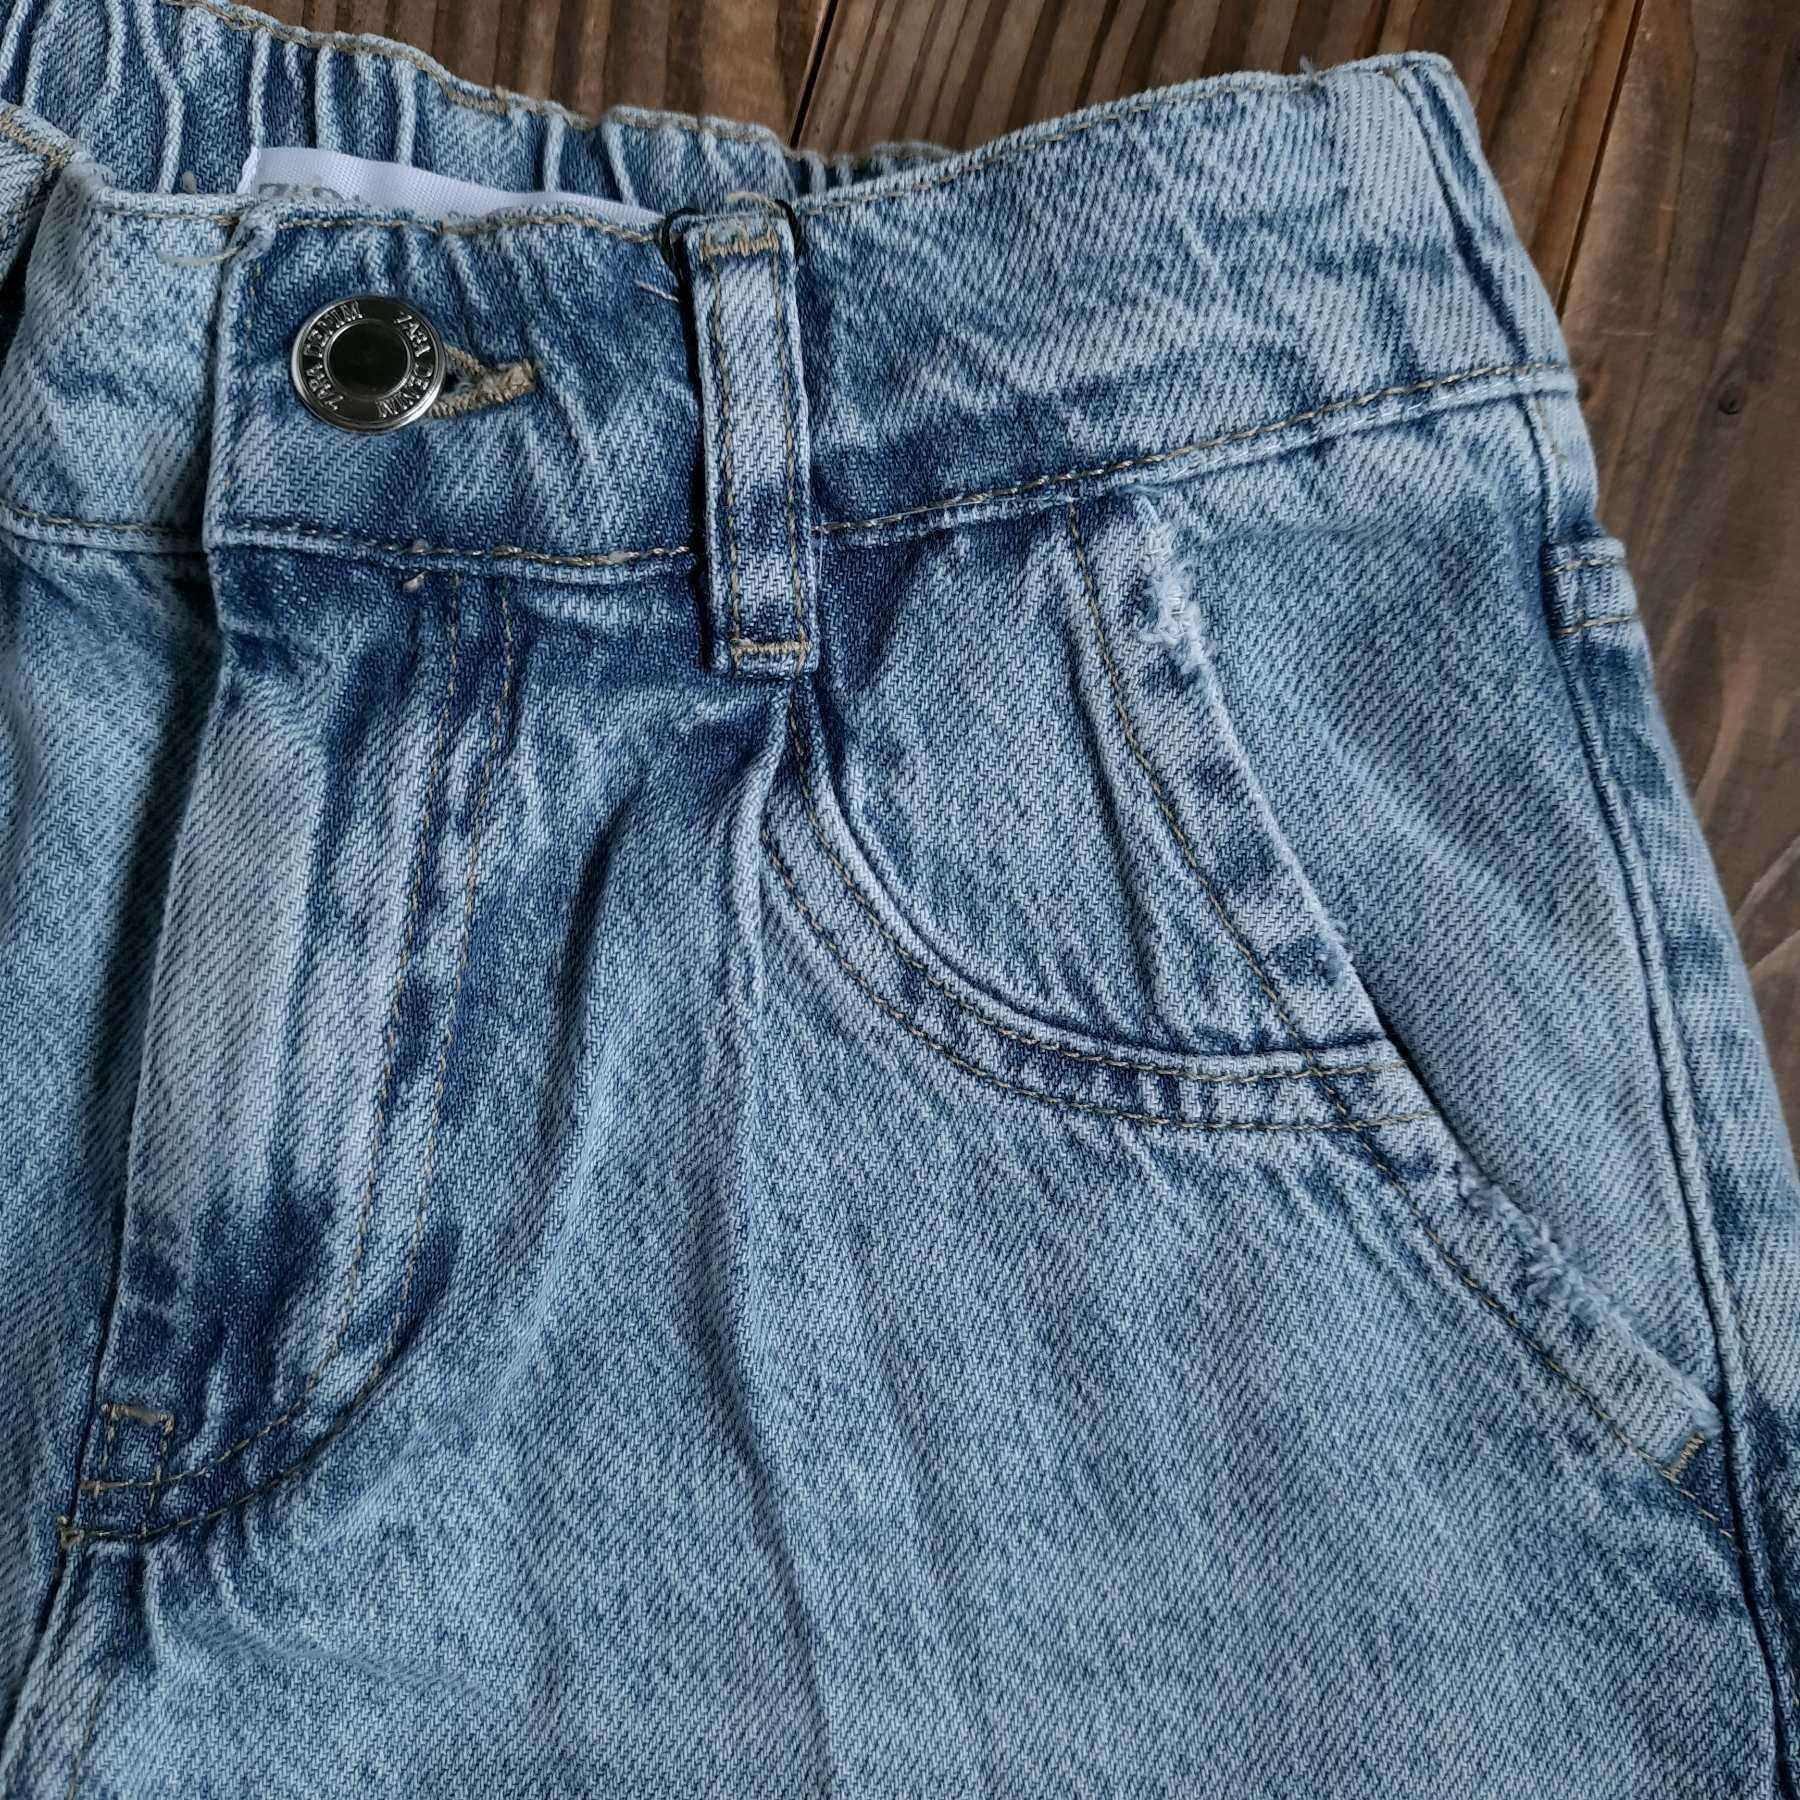 Нові джинсові шорти, футболка Zara, купальник HM на 7-8 років 128 зара